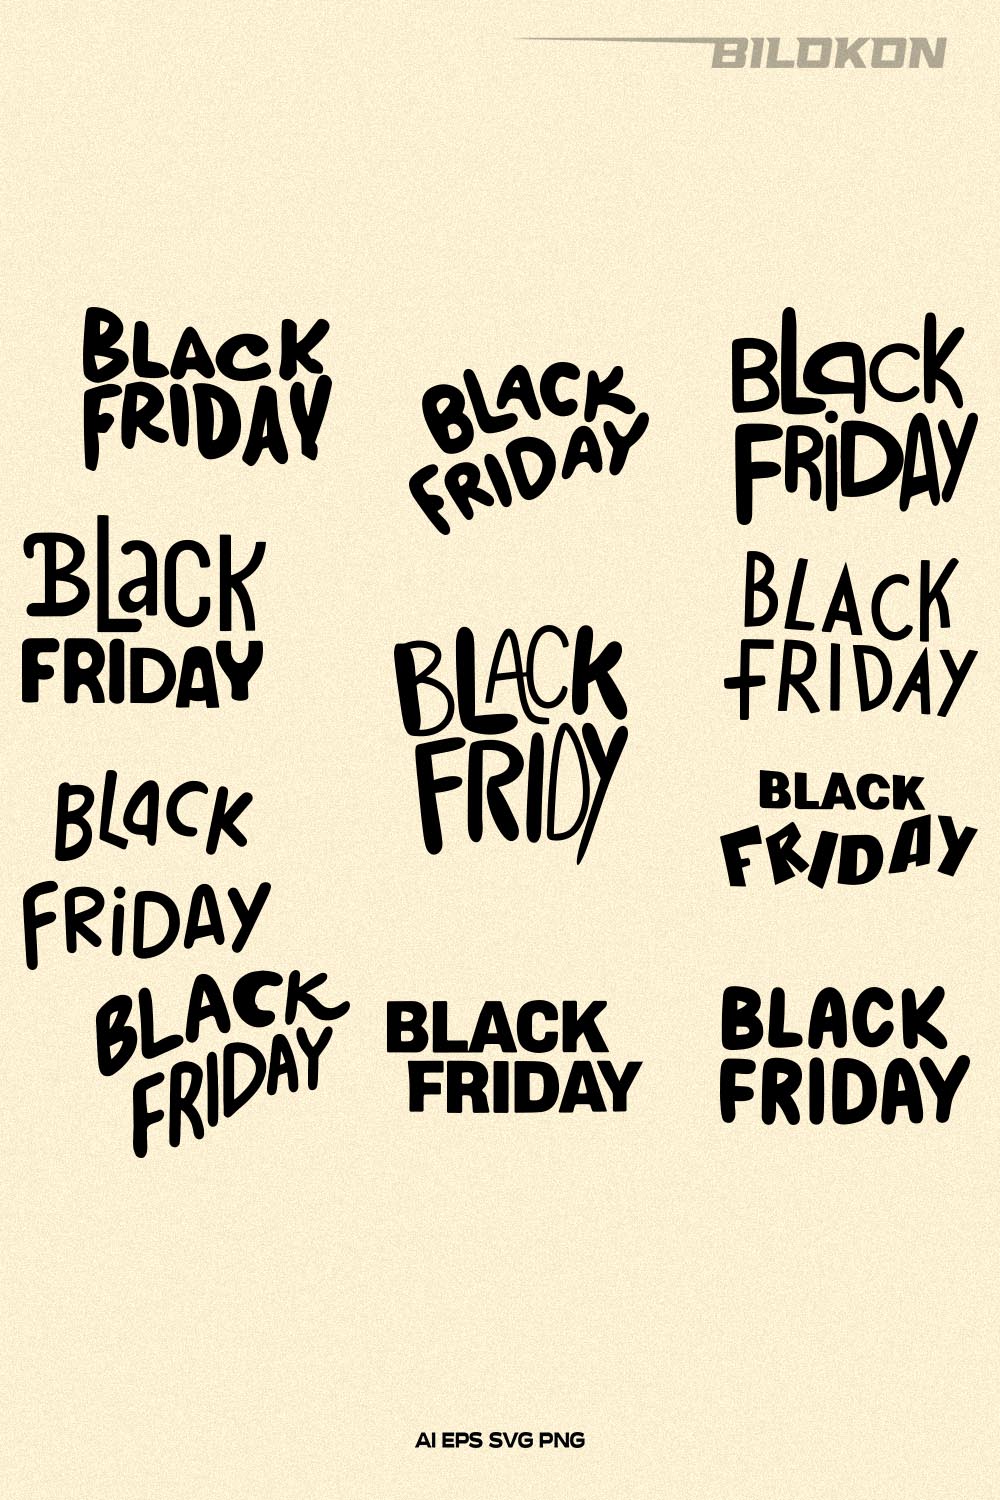 Black Friday SVG Bundle 11 File, Black Friday Sale Vector pinterest preview image.